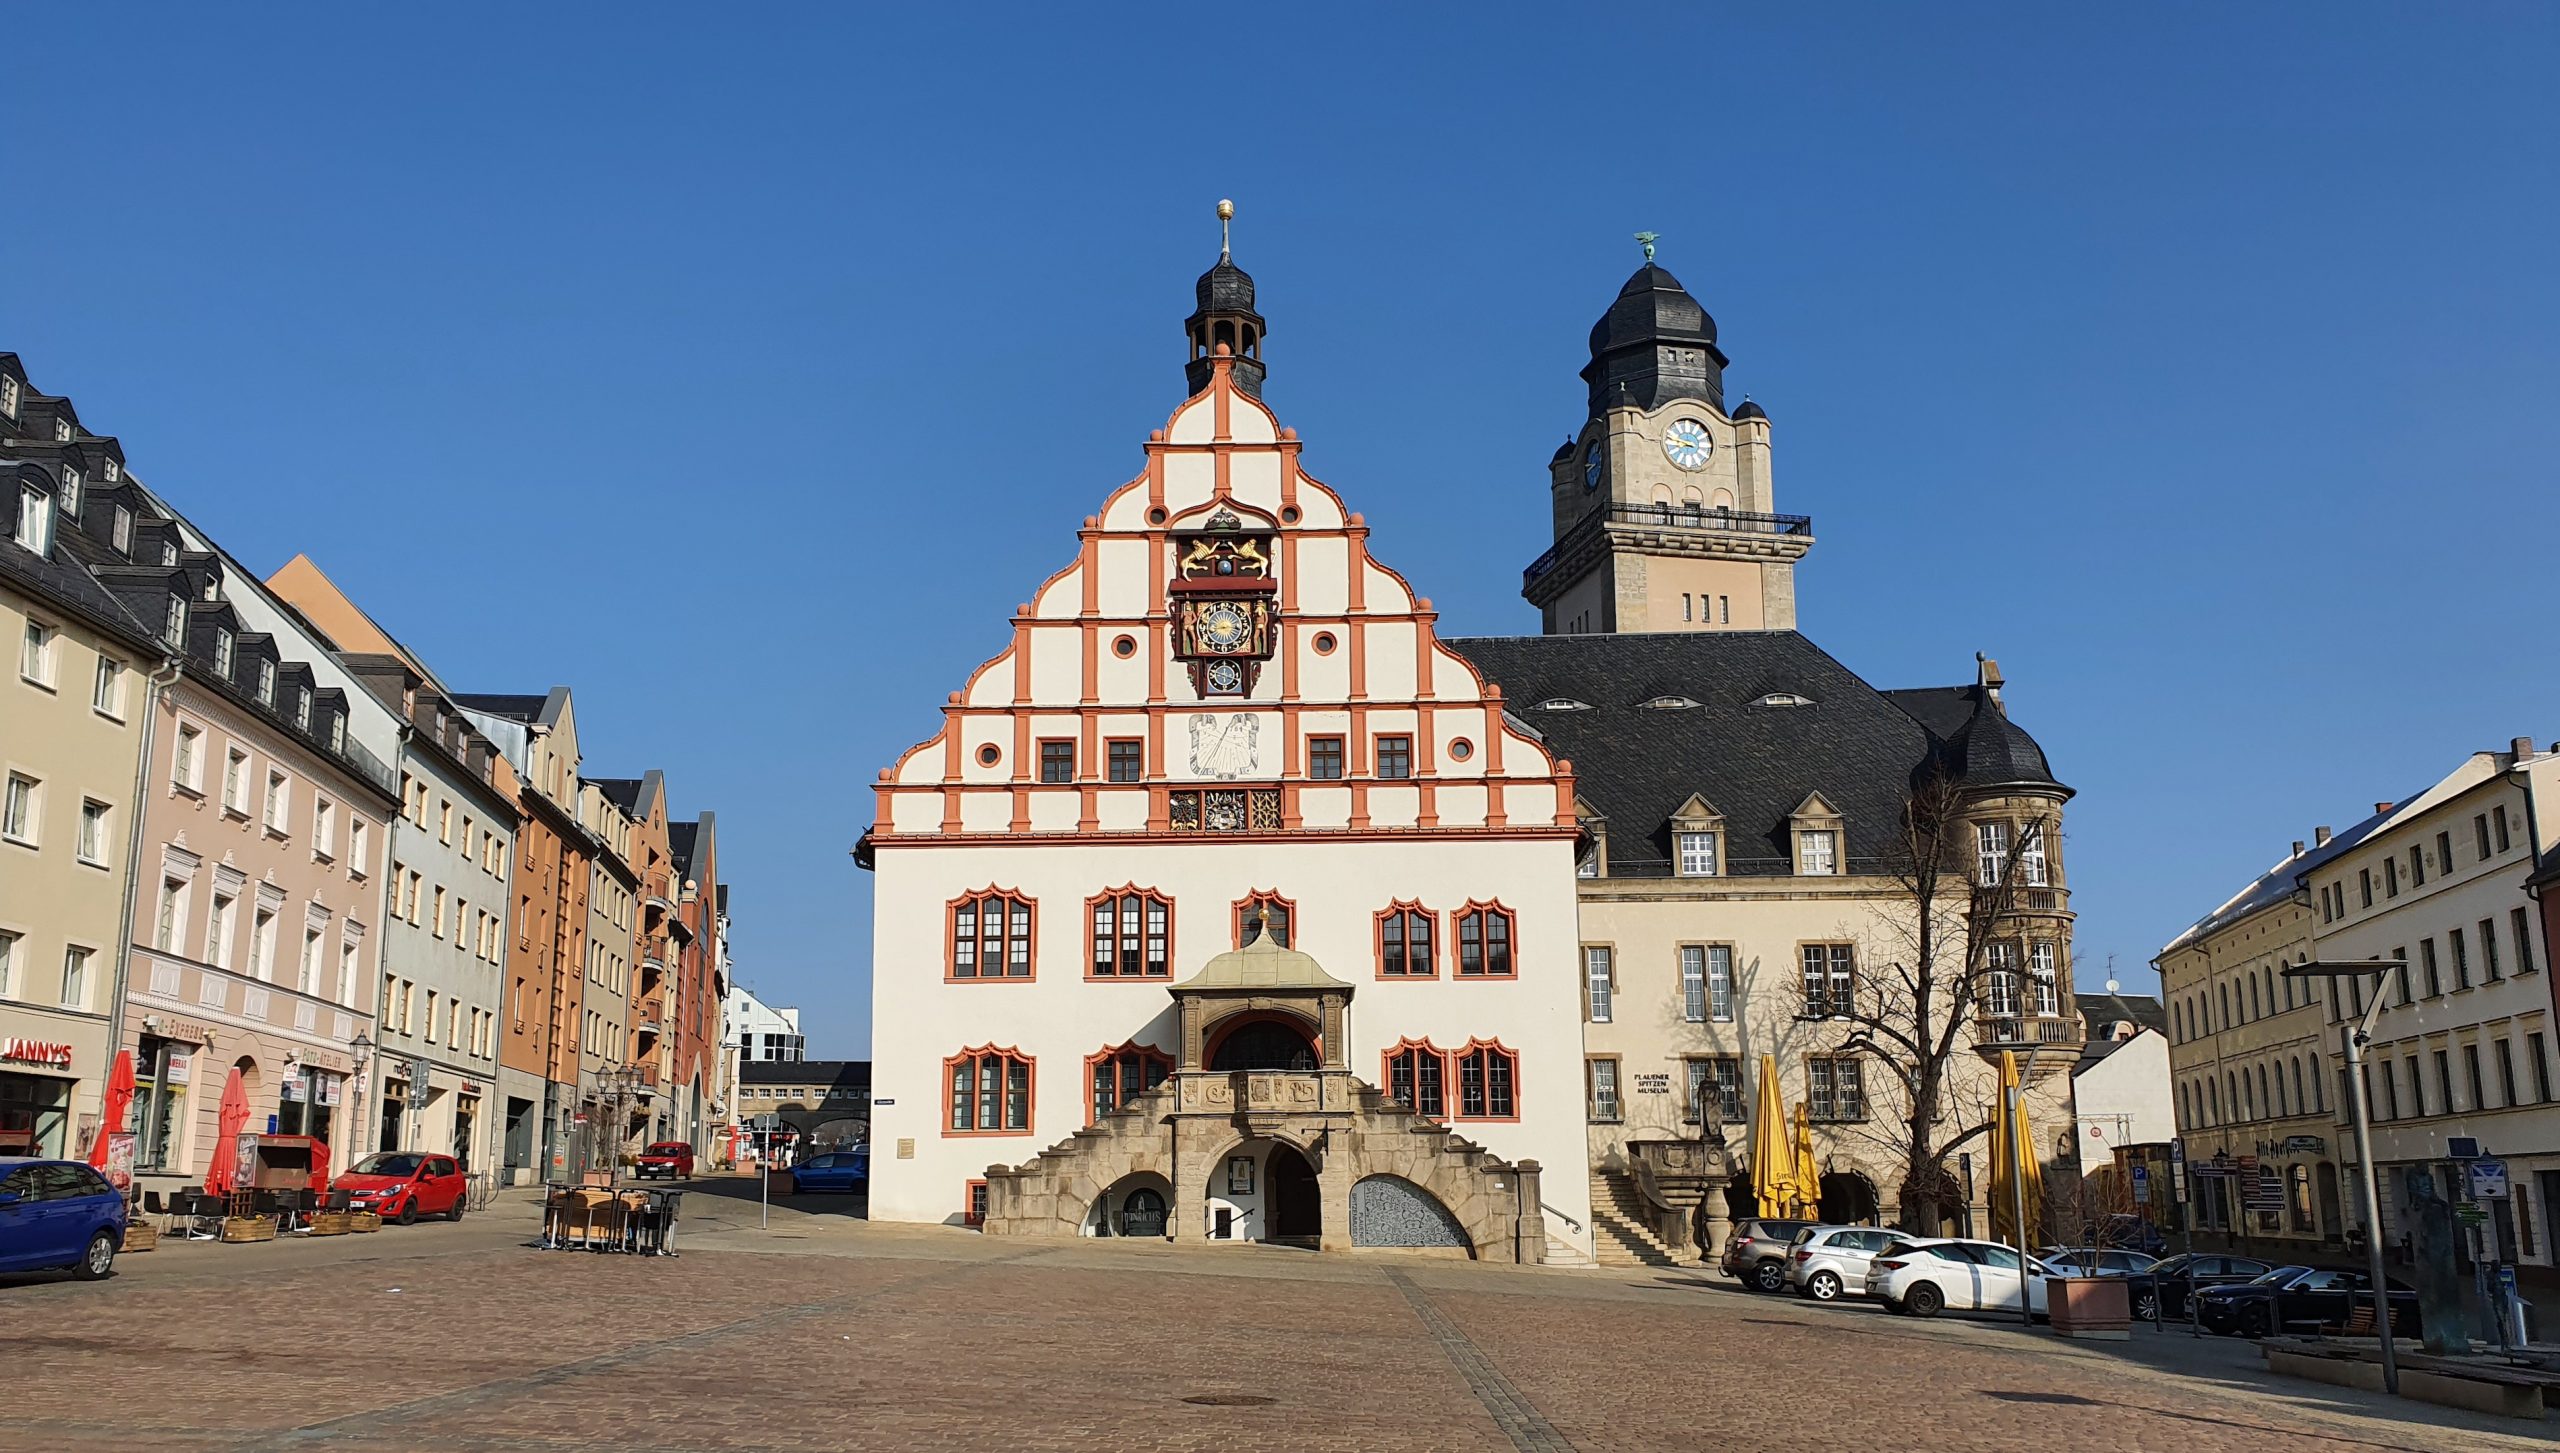  Renaissancegiebel Altes Rathaus zu Plauen2